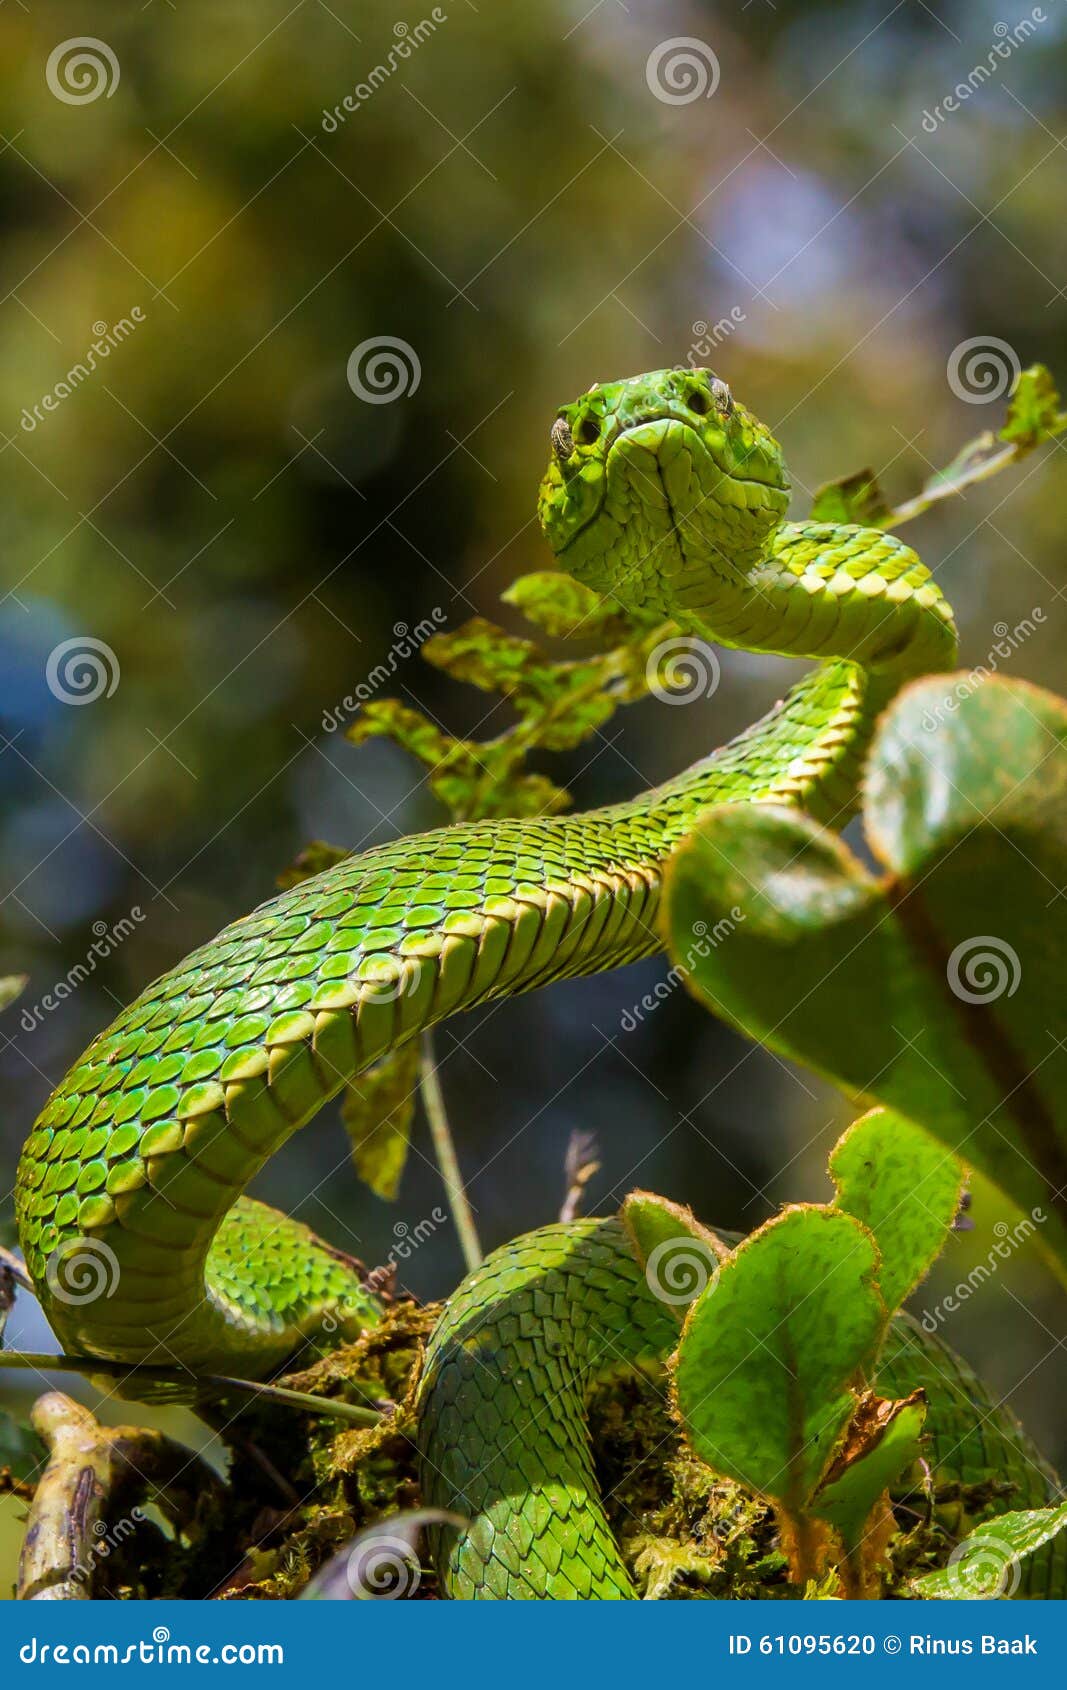 venomous pit viper